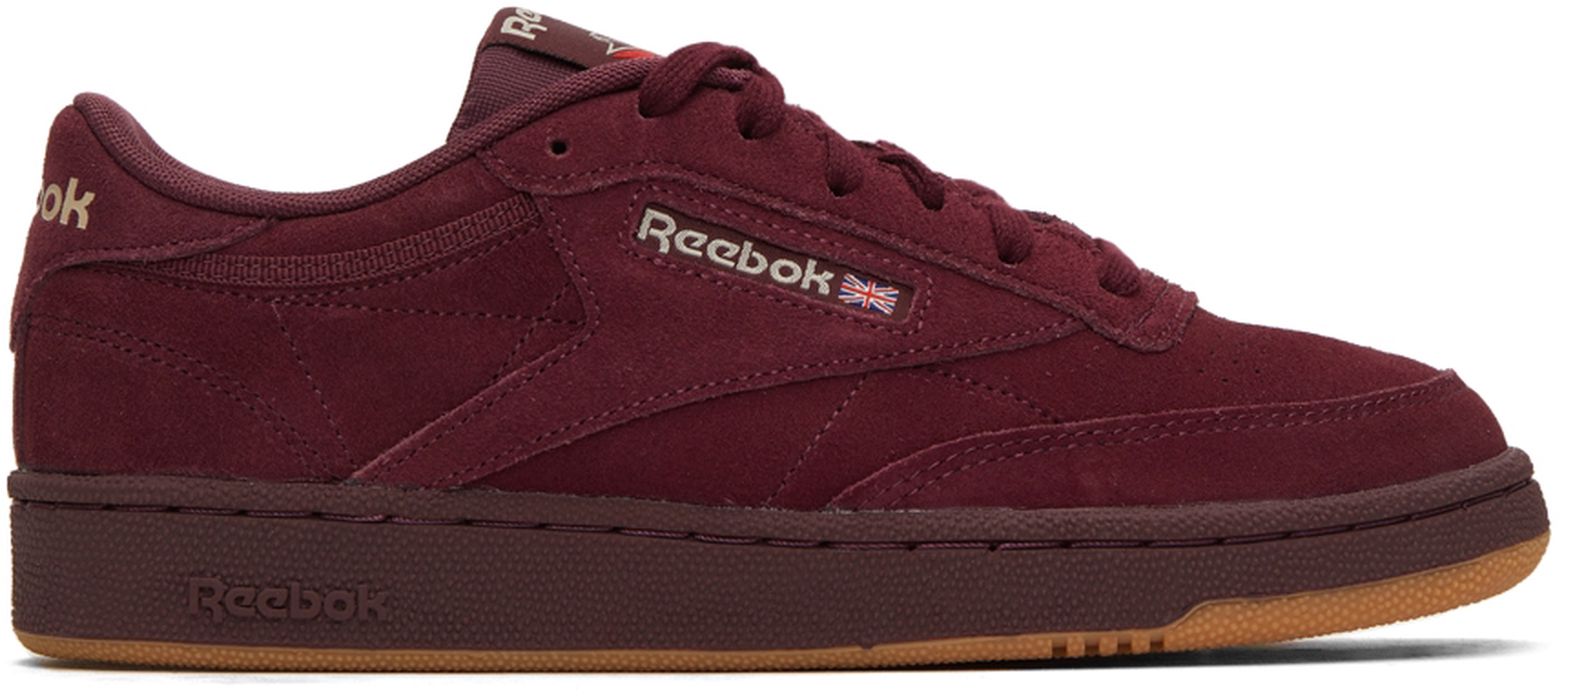 Reebok Classics Burgundy Suede Club C 85 Sneakers